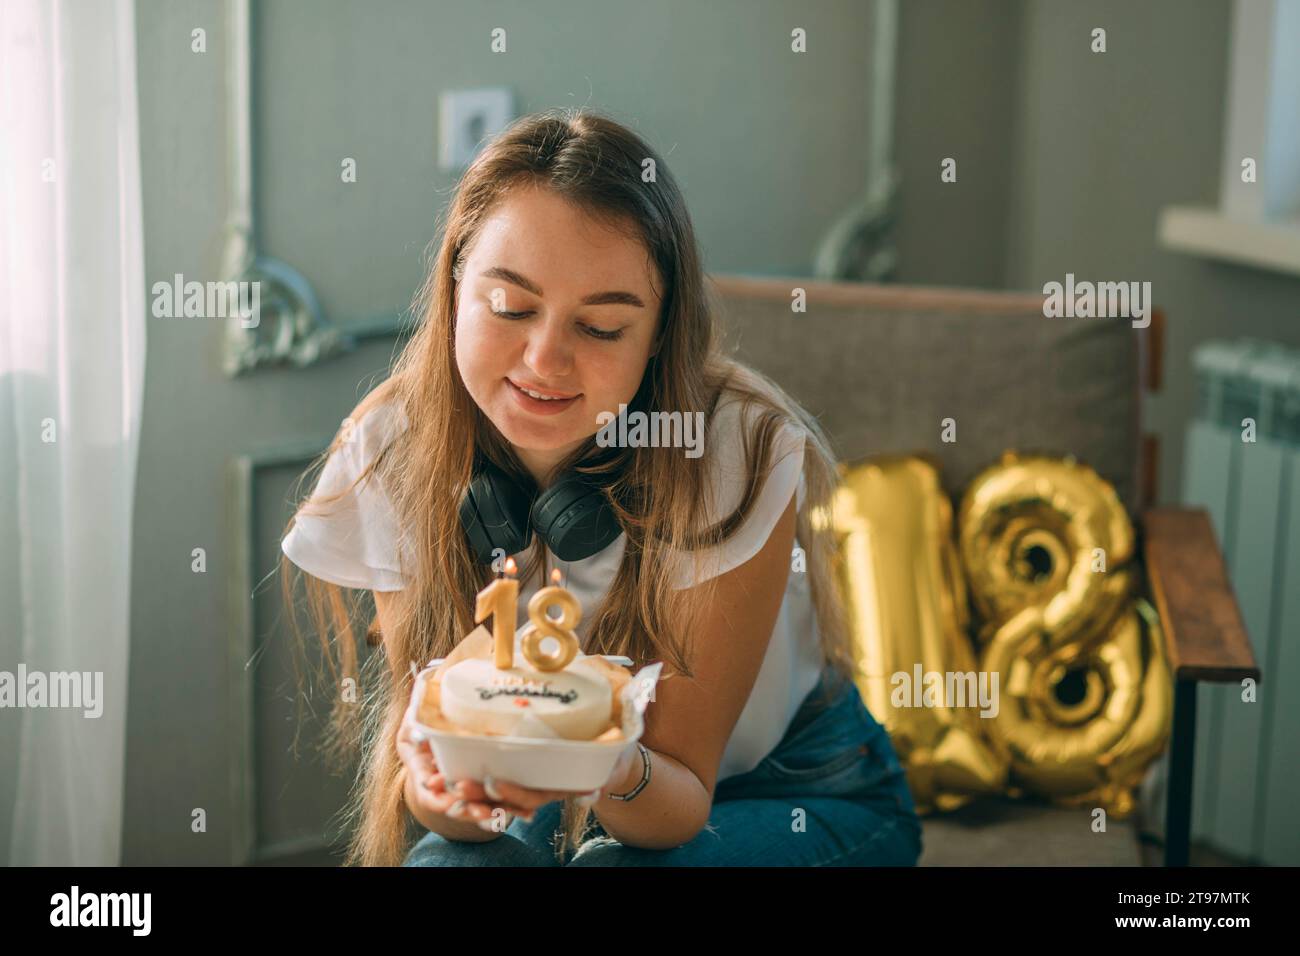 Donna sorridente che guarda la torta con le candele numero 18 per il compleanno Foto Stock